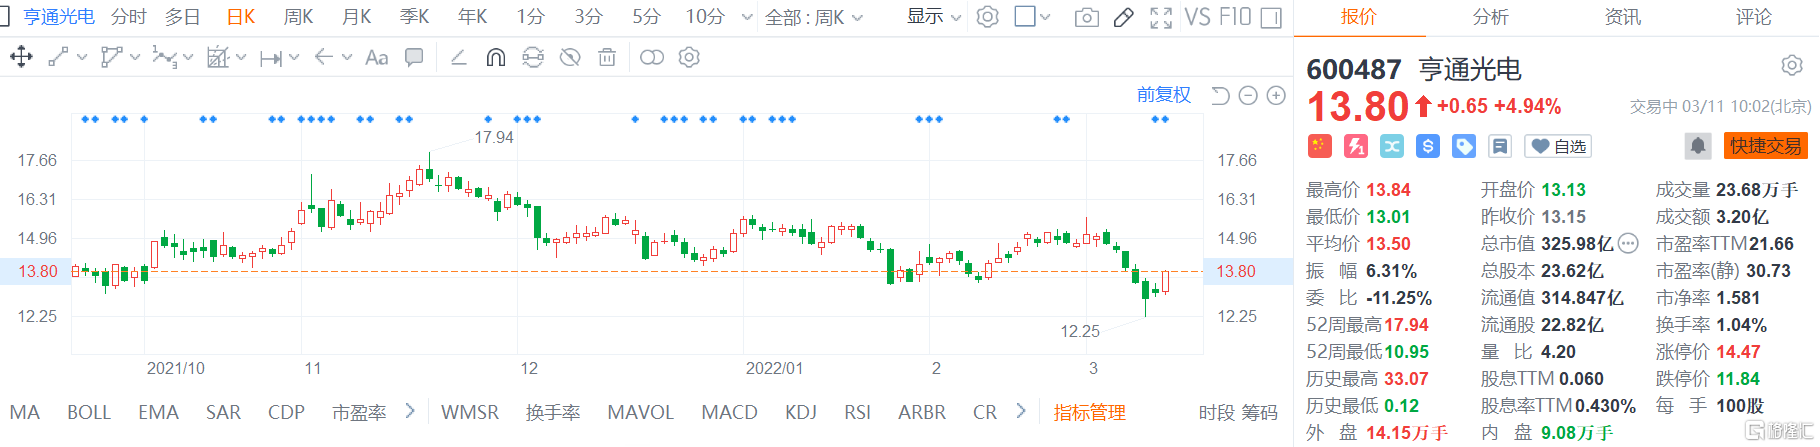 亨通光电(600487.SH)股价继续回升 现报13.8元涨幅4.9%